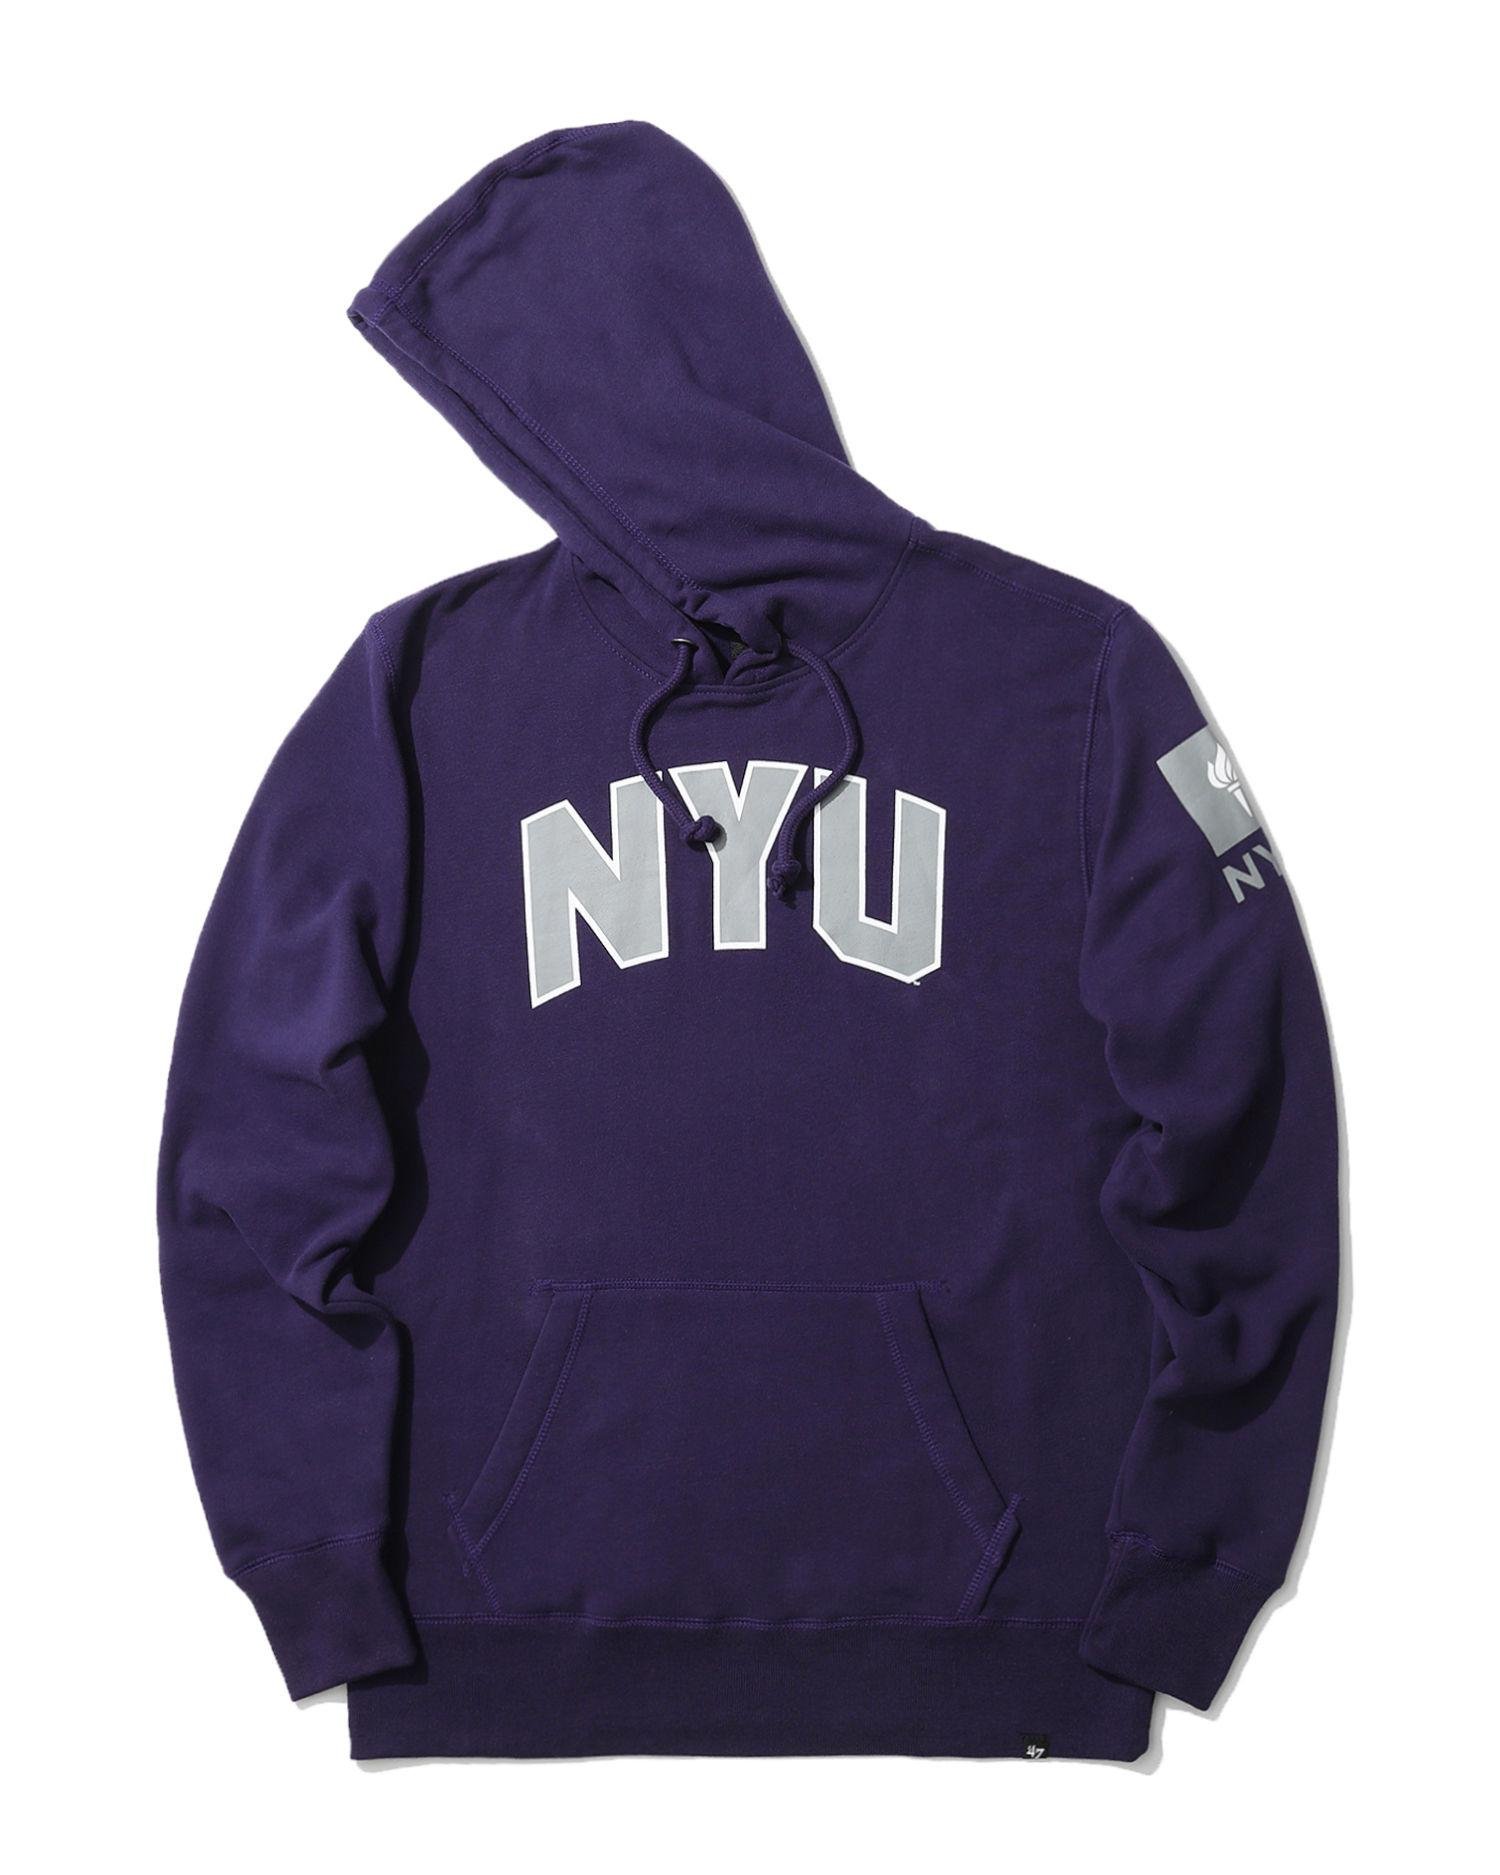 NYU hoodie by '47